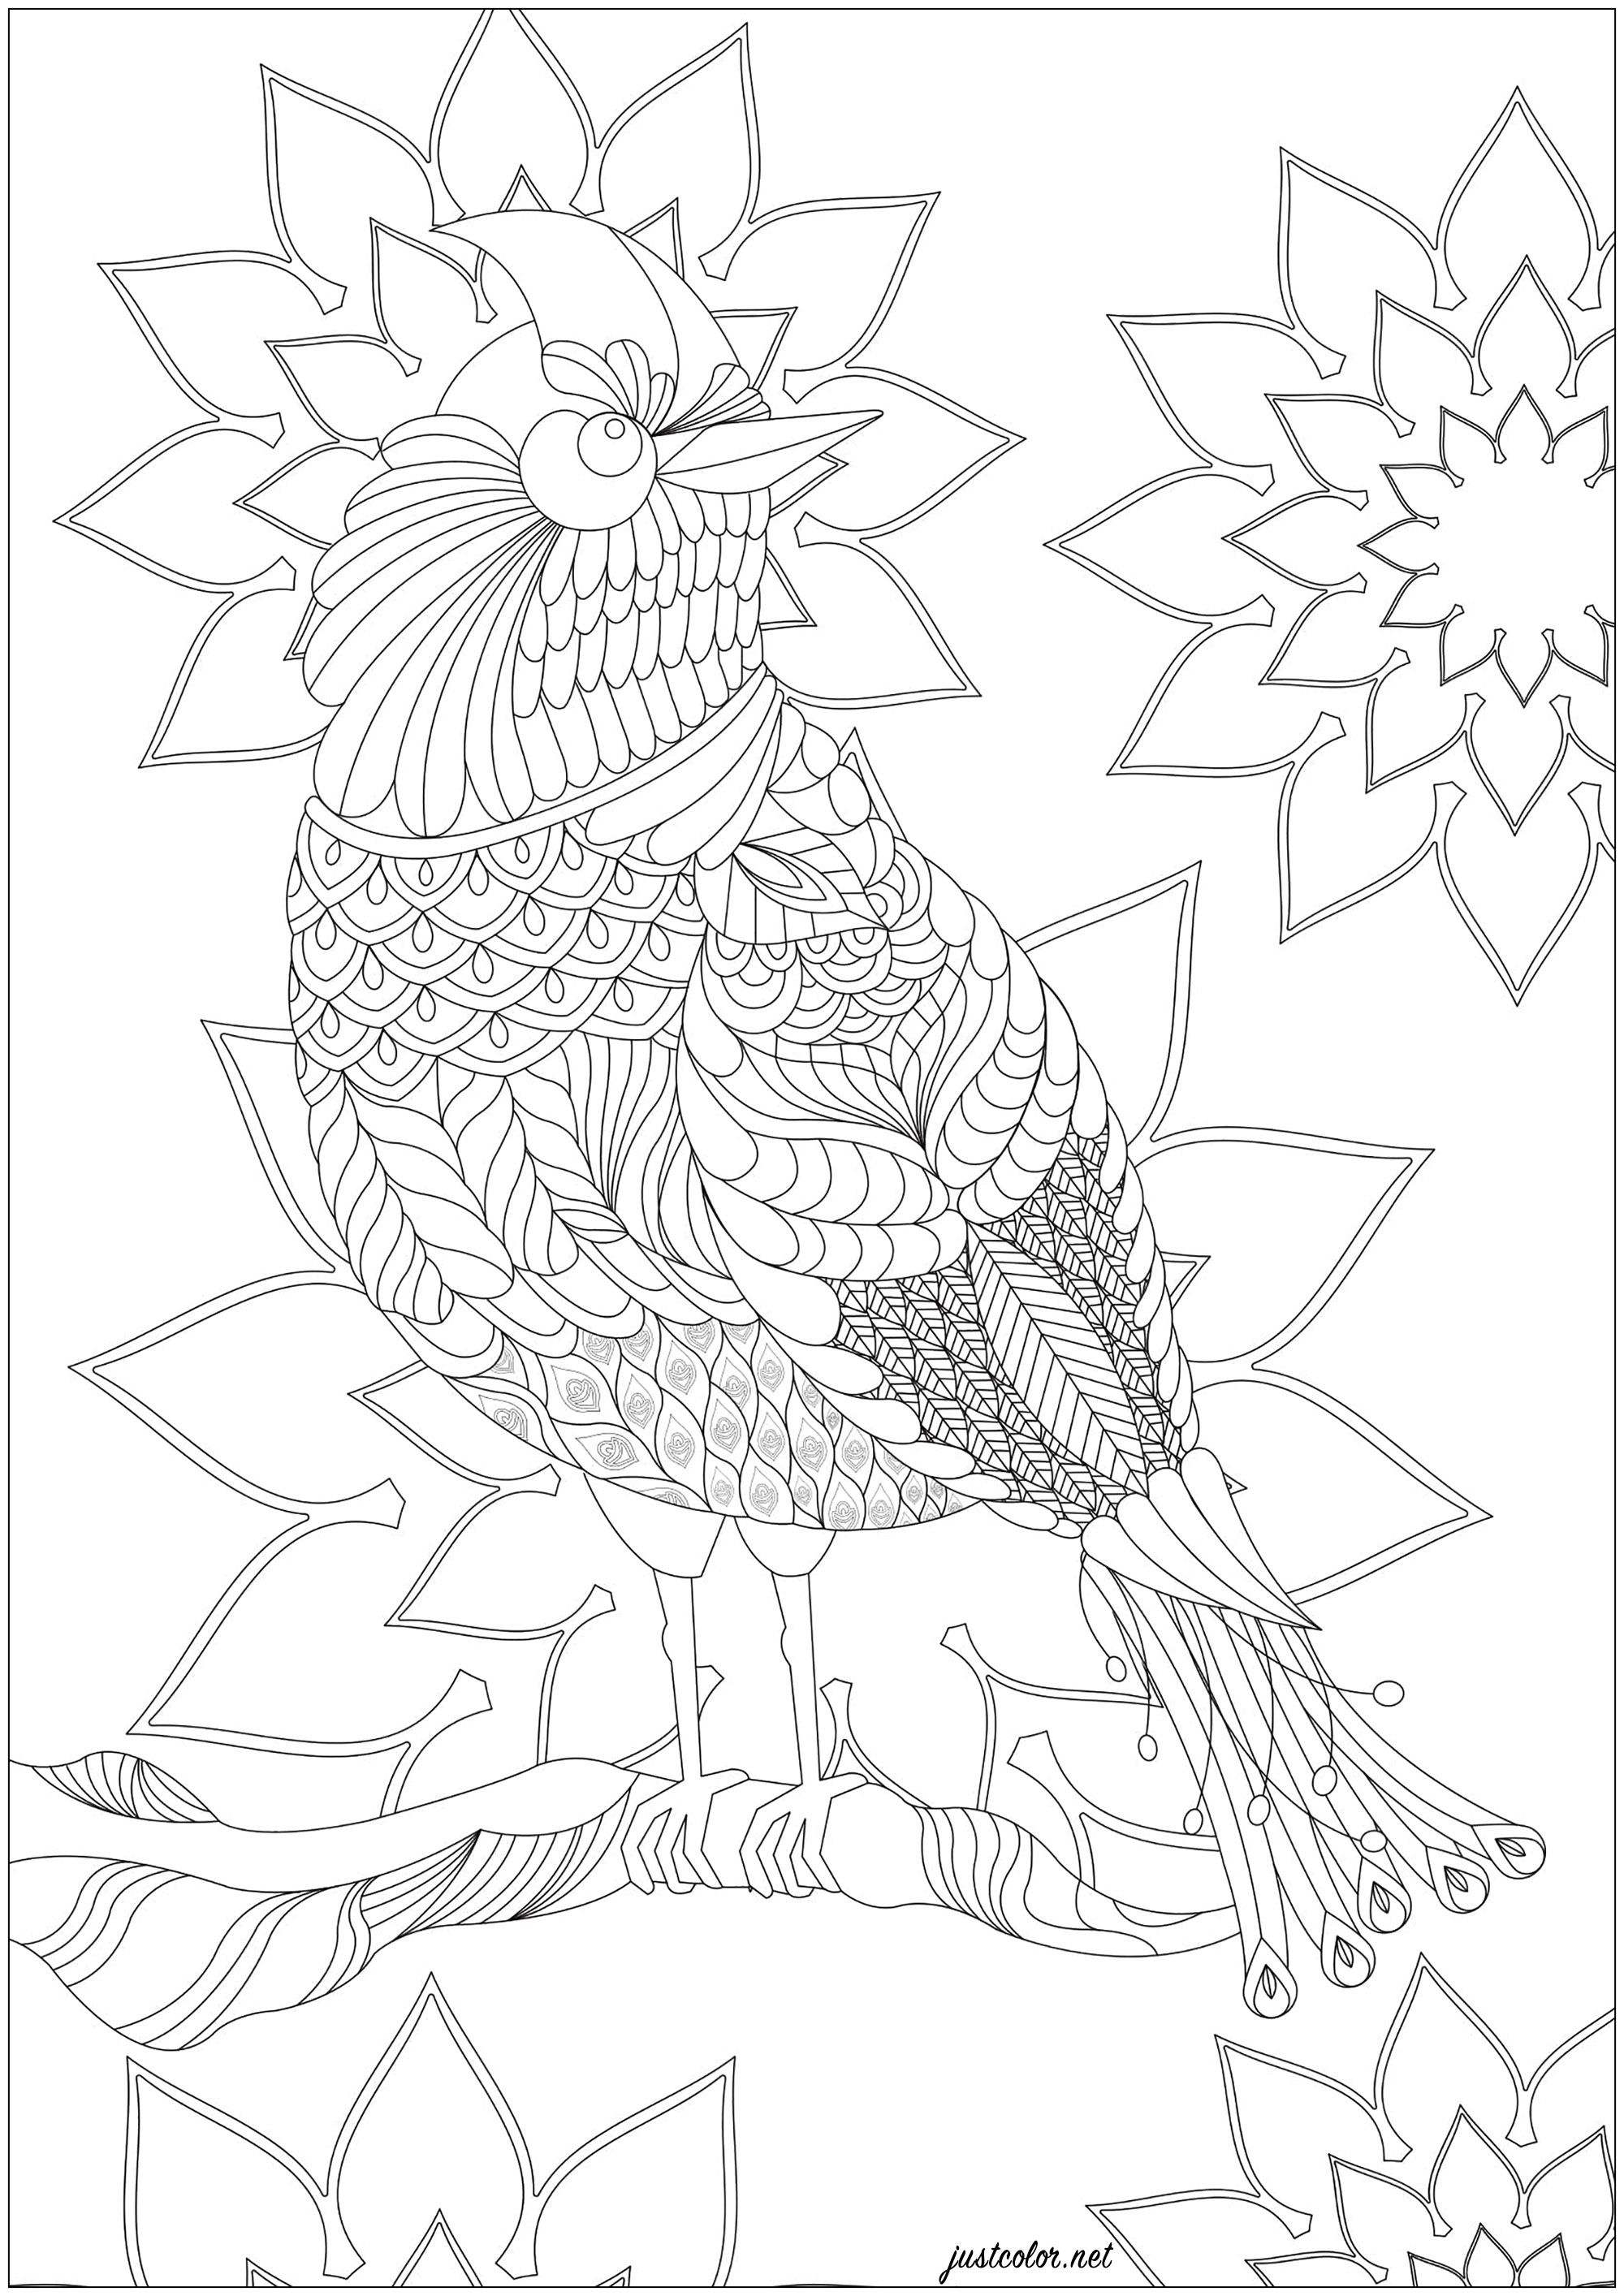 Oiseau imaginaire, entre le faisan doré et le paradisier, avec nombreux motifs à colorier